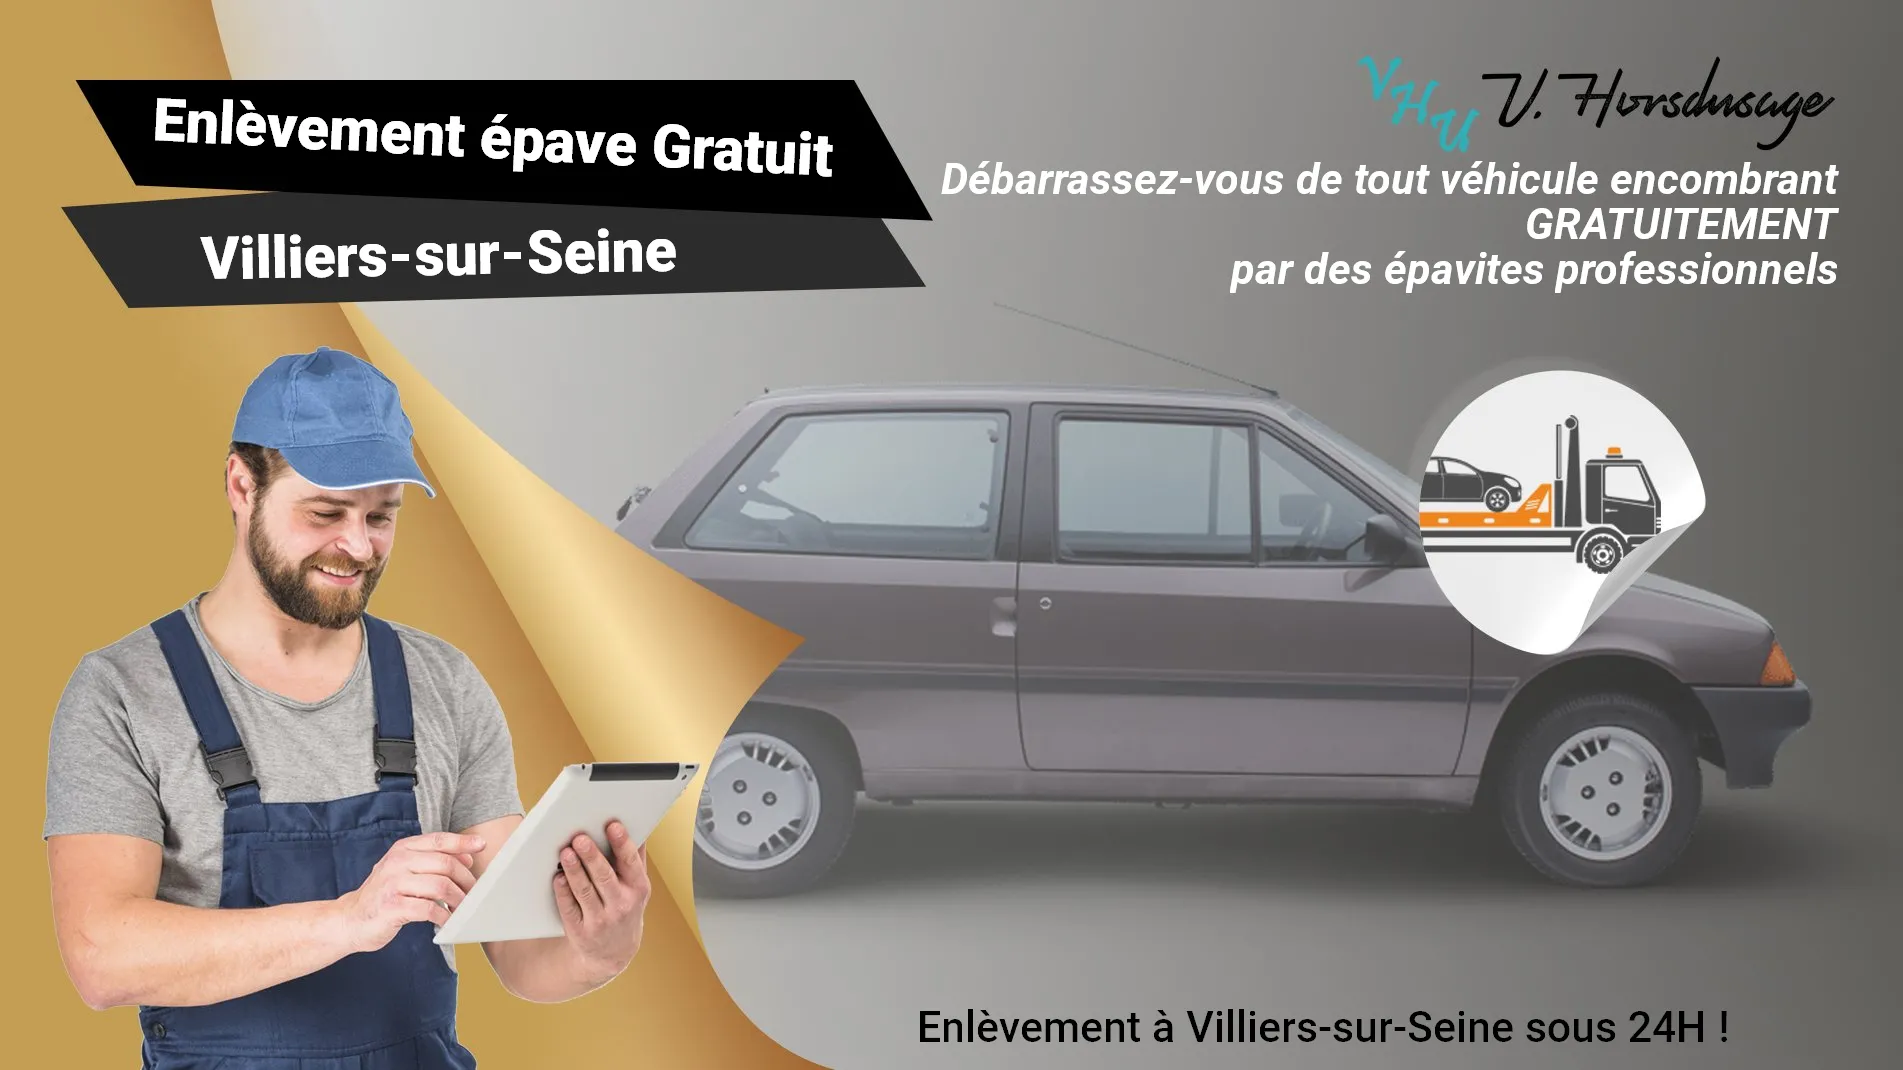 Pour un enlèvement gratuit à Villiers-sur-Seine, contactez nos épavistes agréé VHU